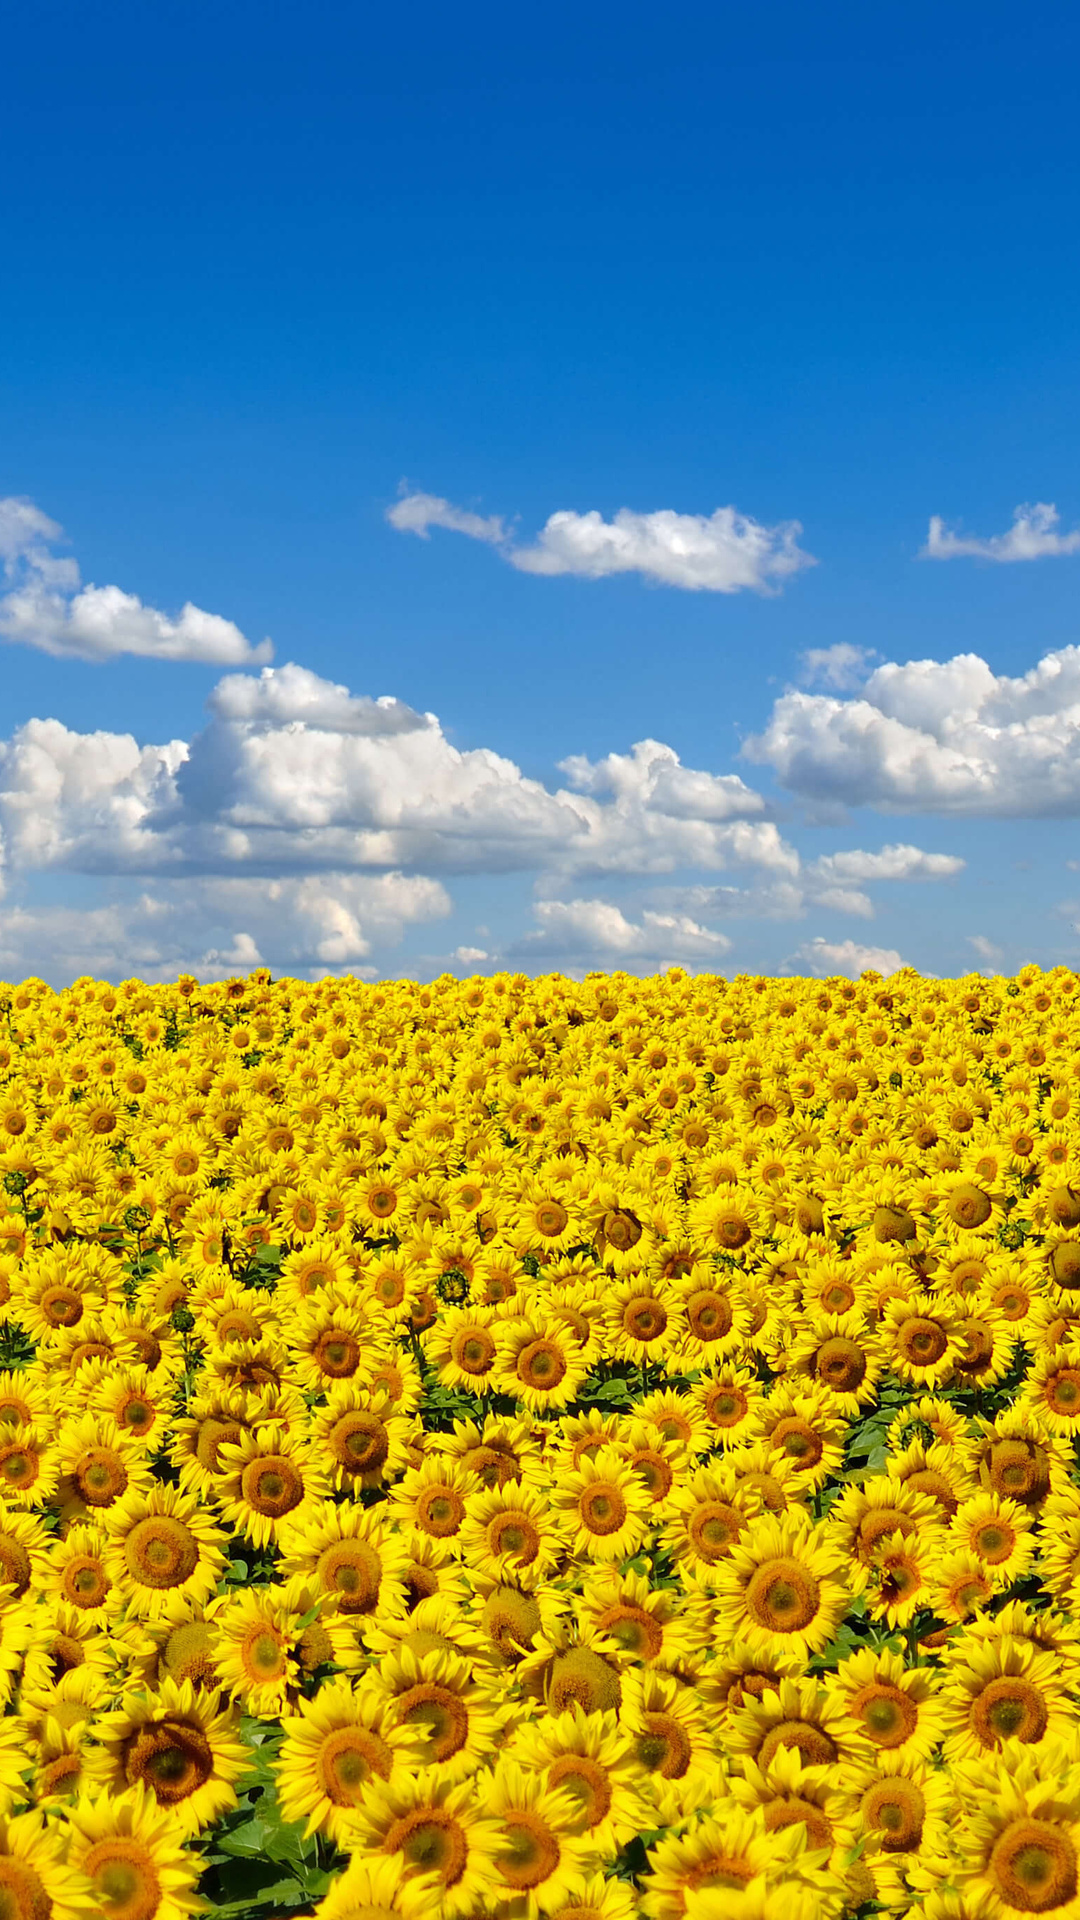 Sunflowers iPhone Wallpaper | iDrop News